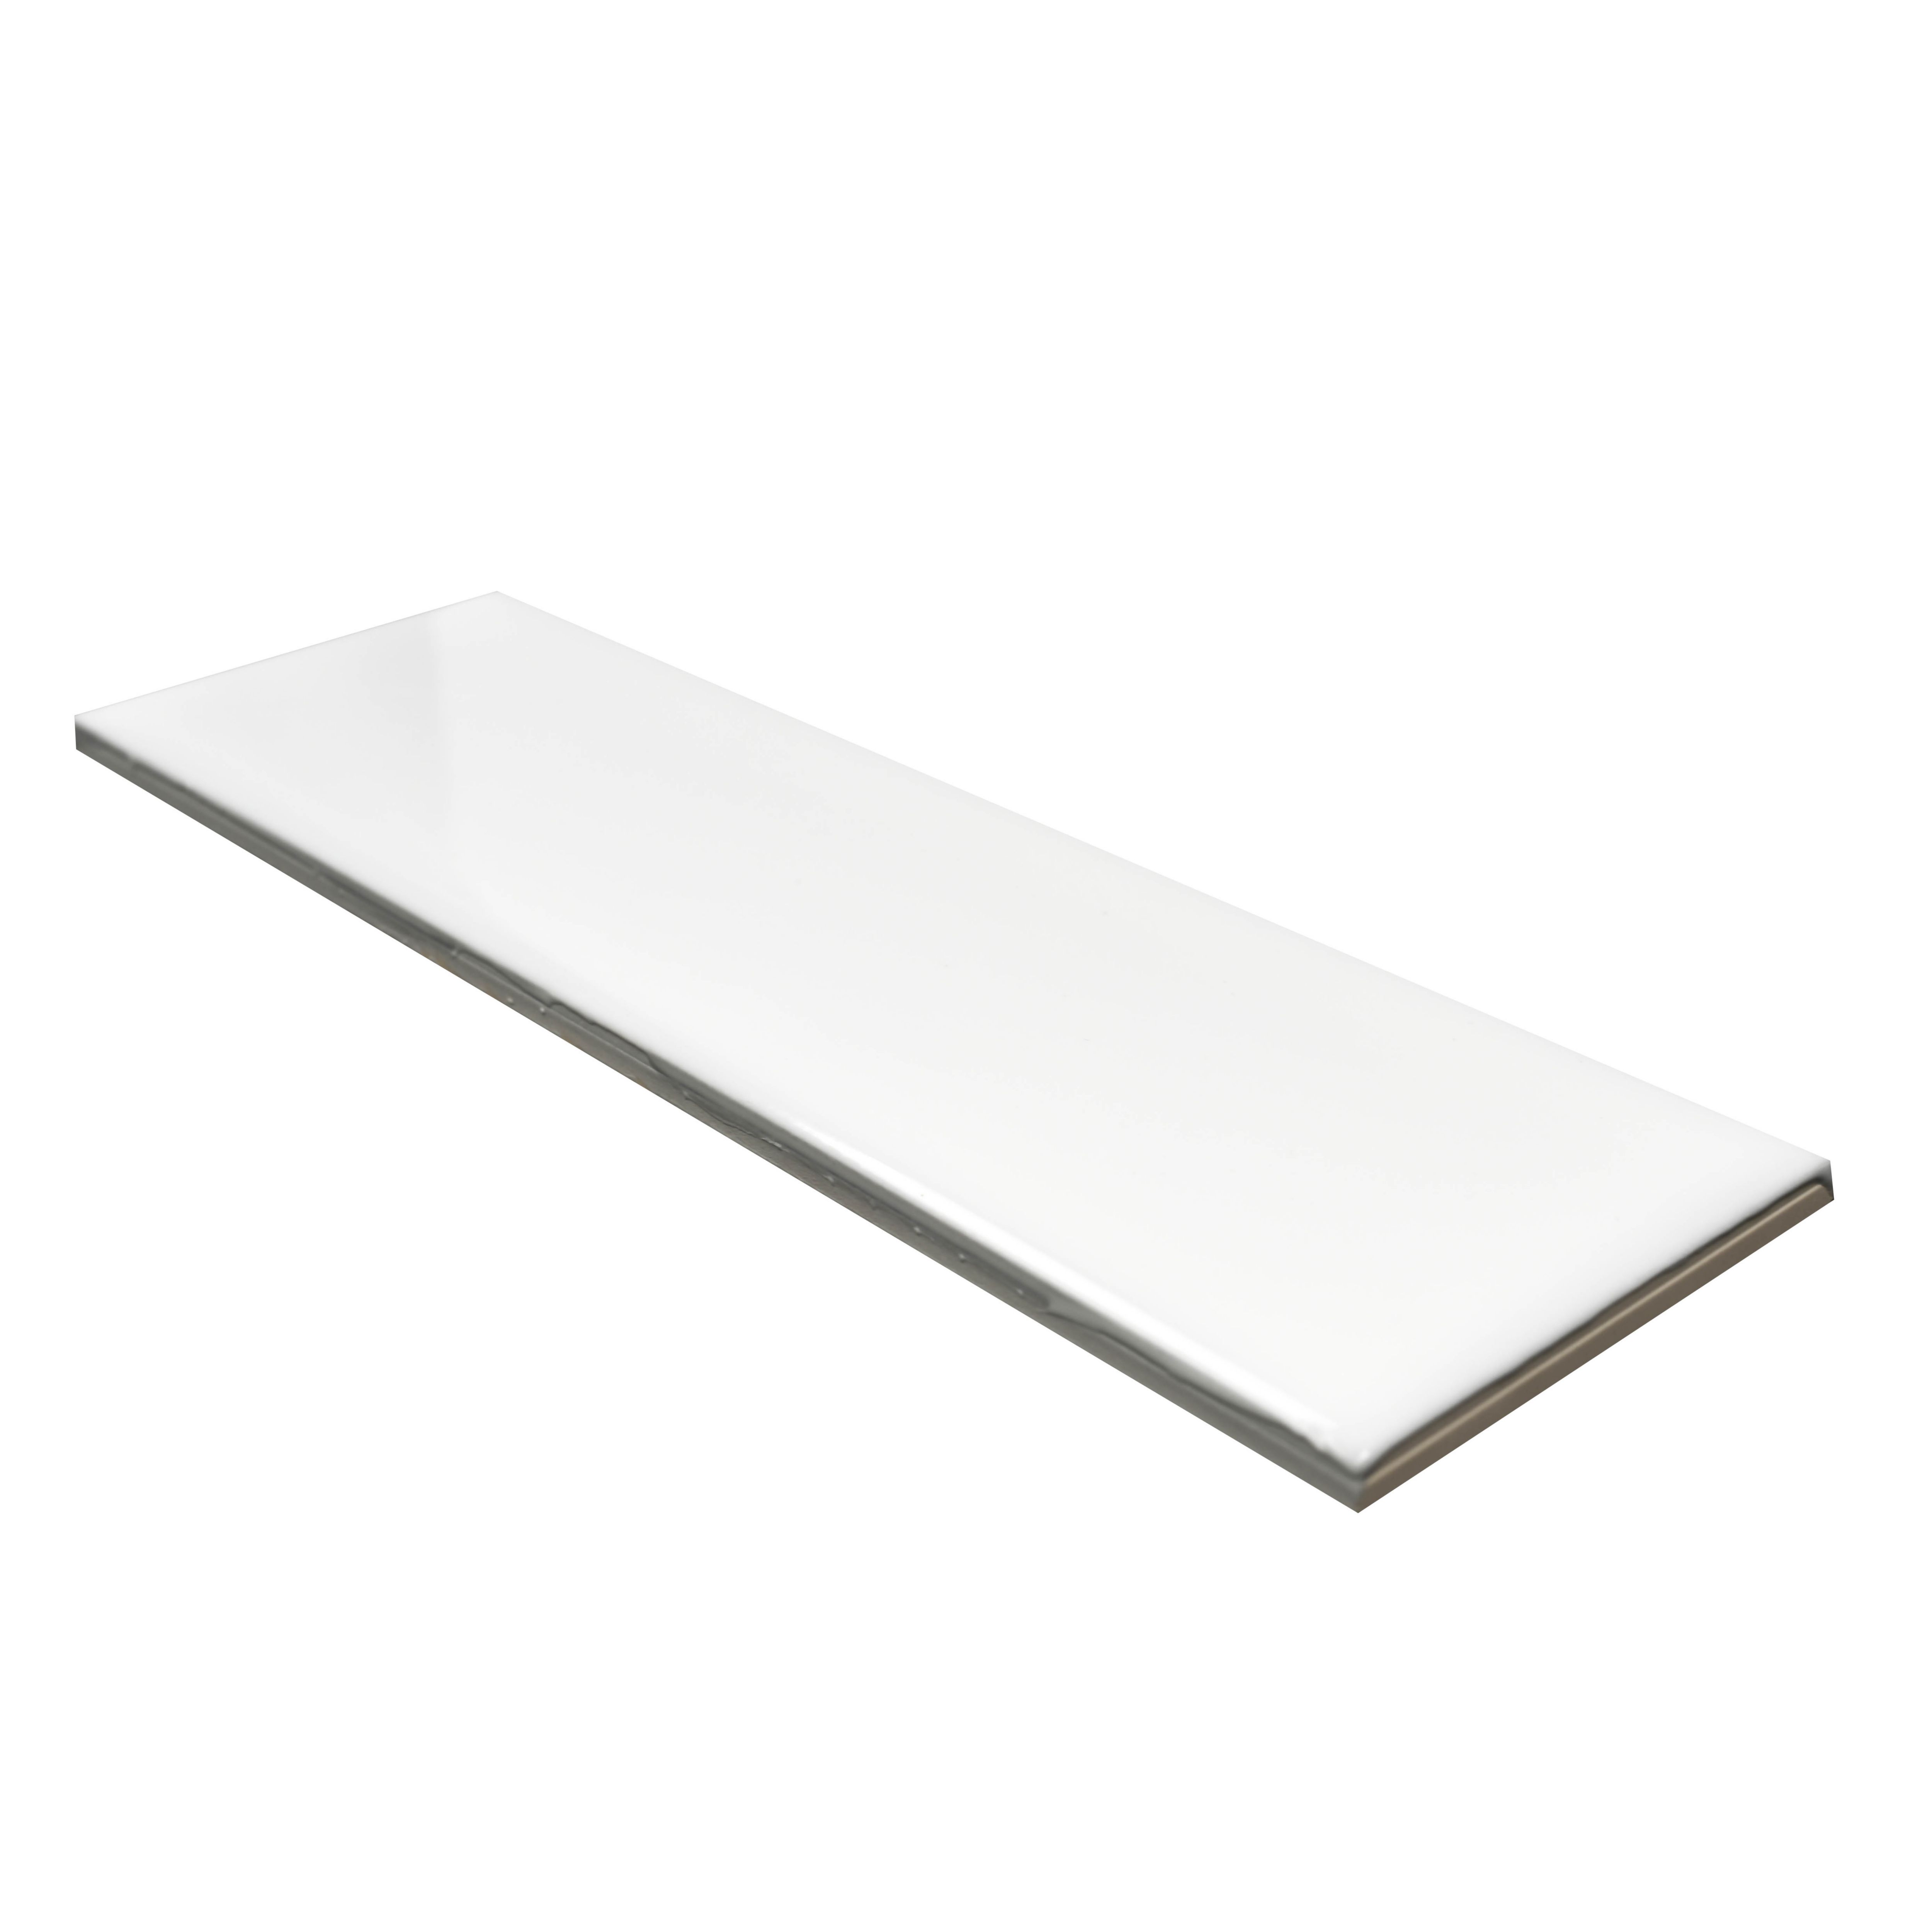 Mayfair White Gloss Ceramic Wall Tile, Pack of 54, (L)245mm (W)75mm